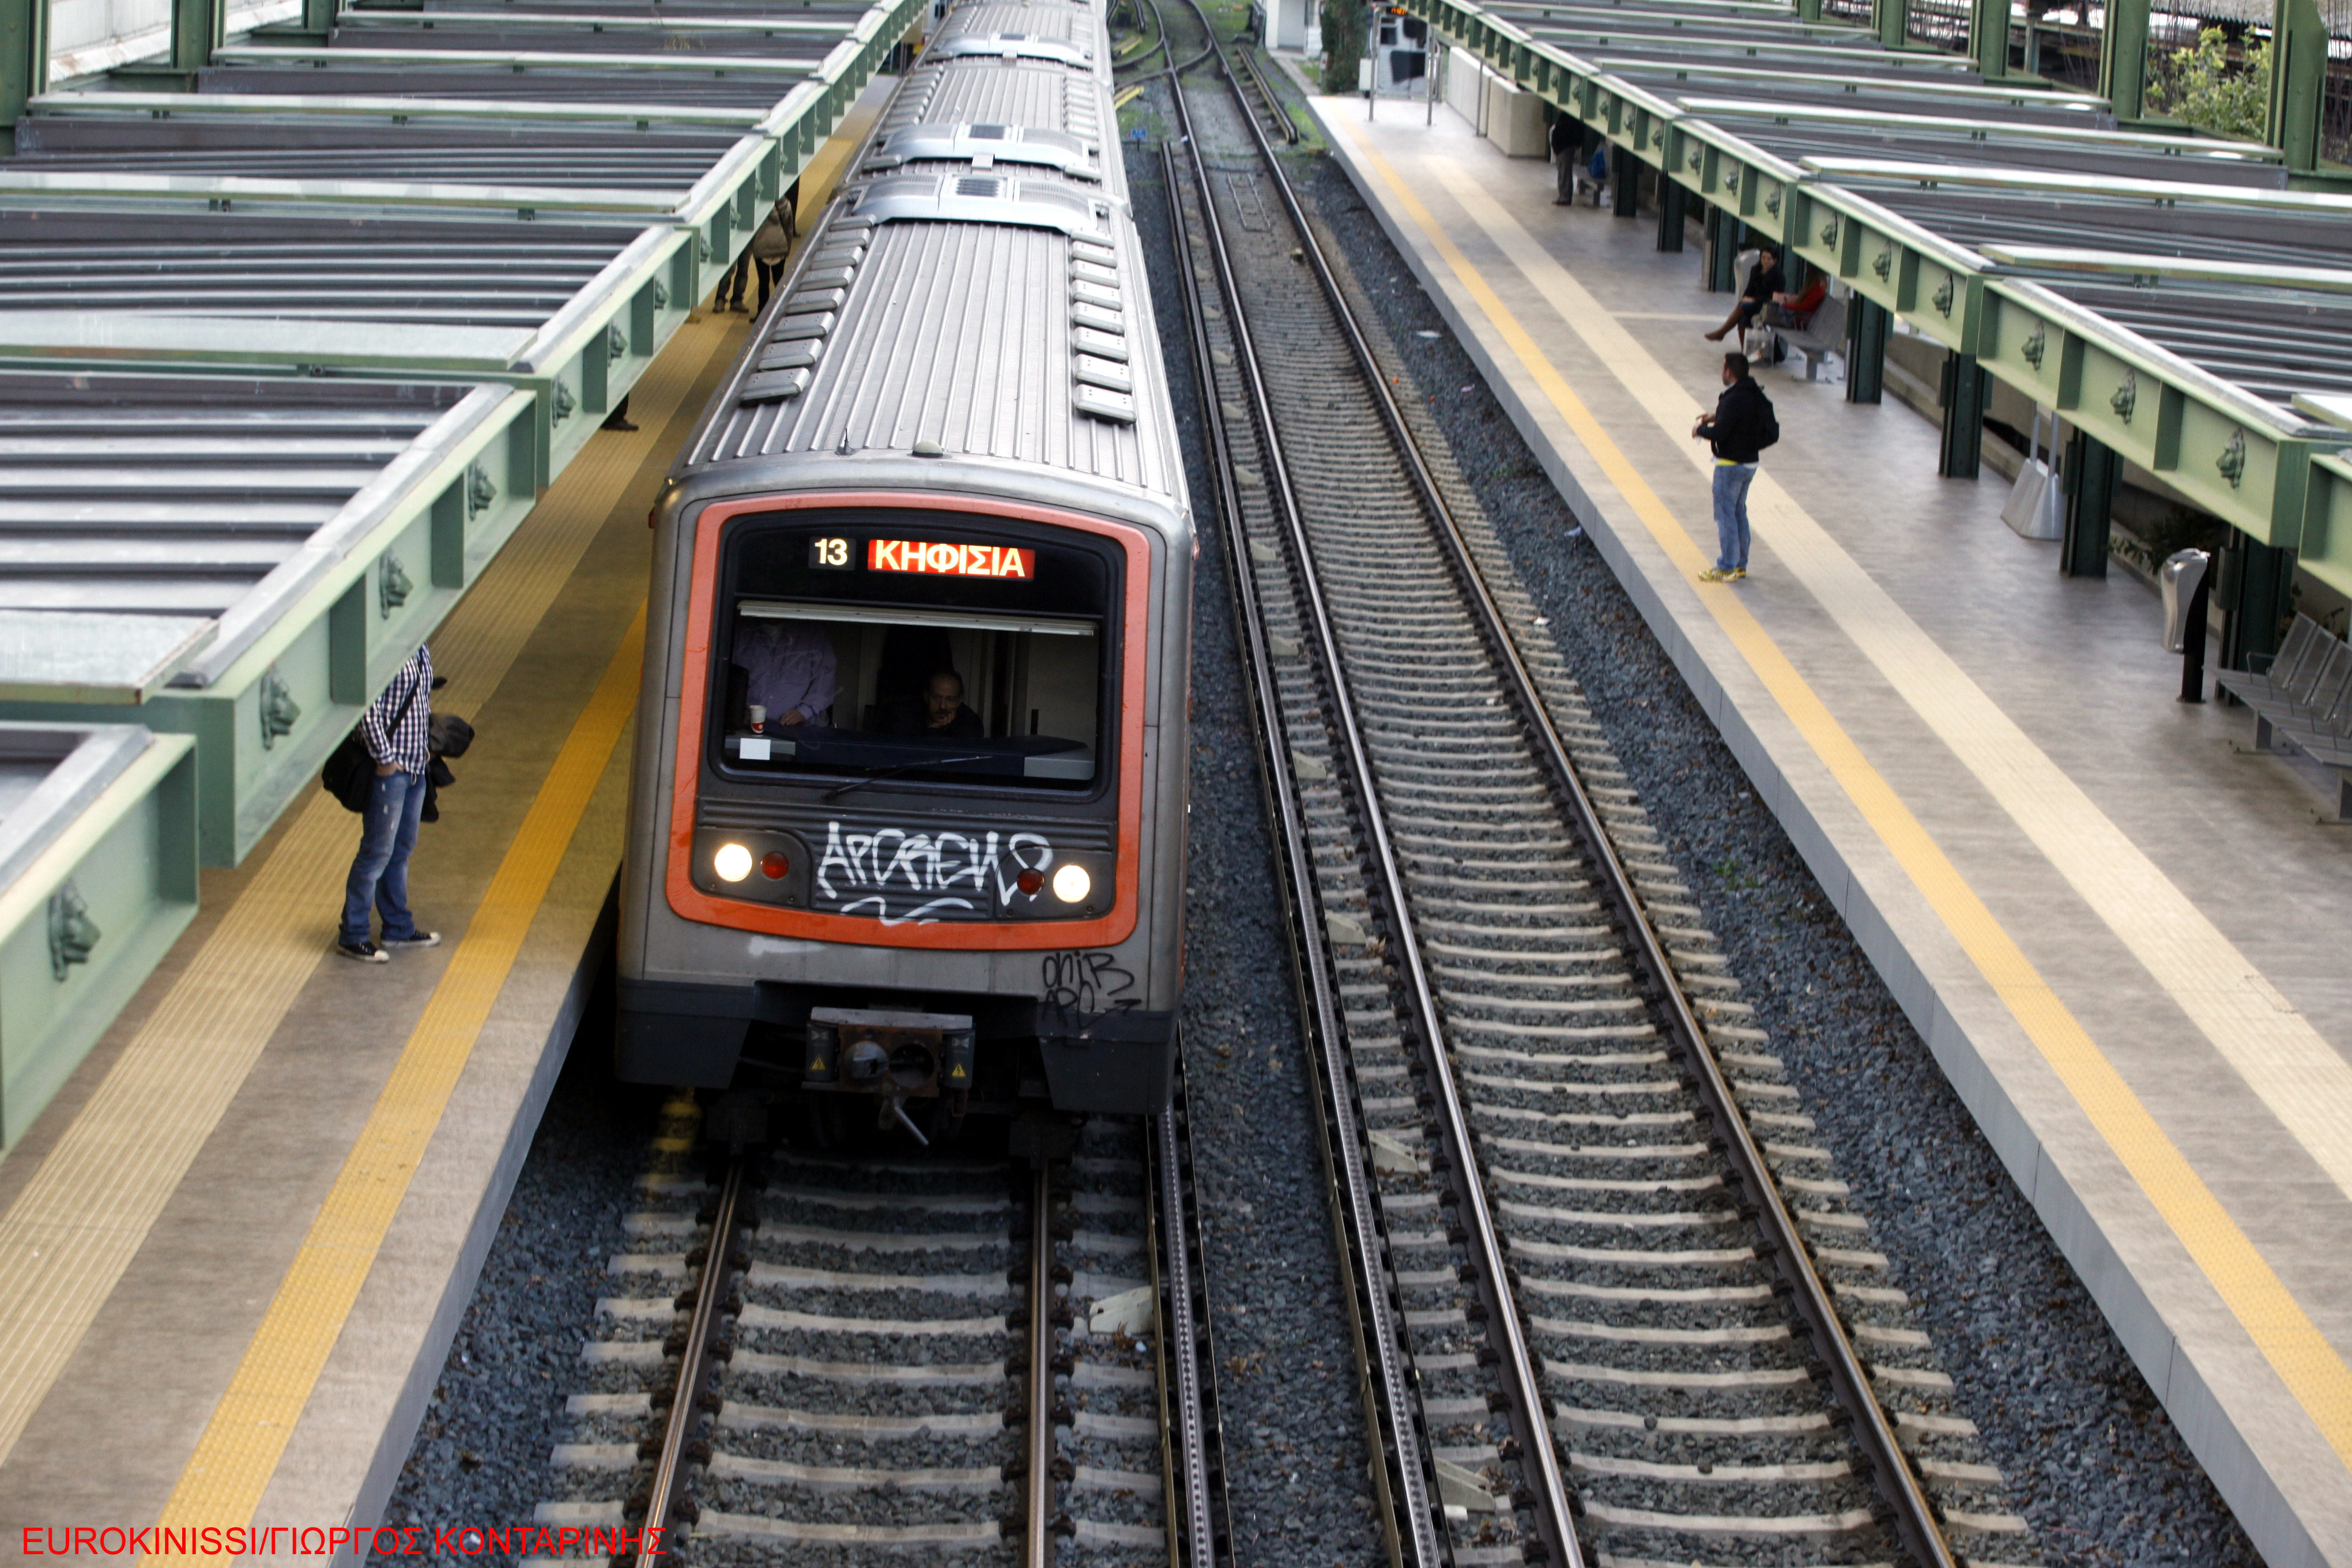 Δωρεάν δίκτυο Wi-Fi έχουν πλέον επτά σταθμοί σε μετρό και ΗΣΑΠ